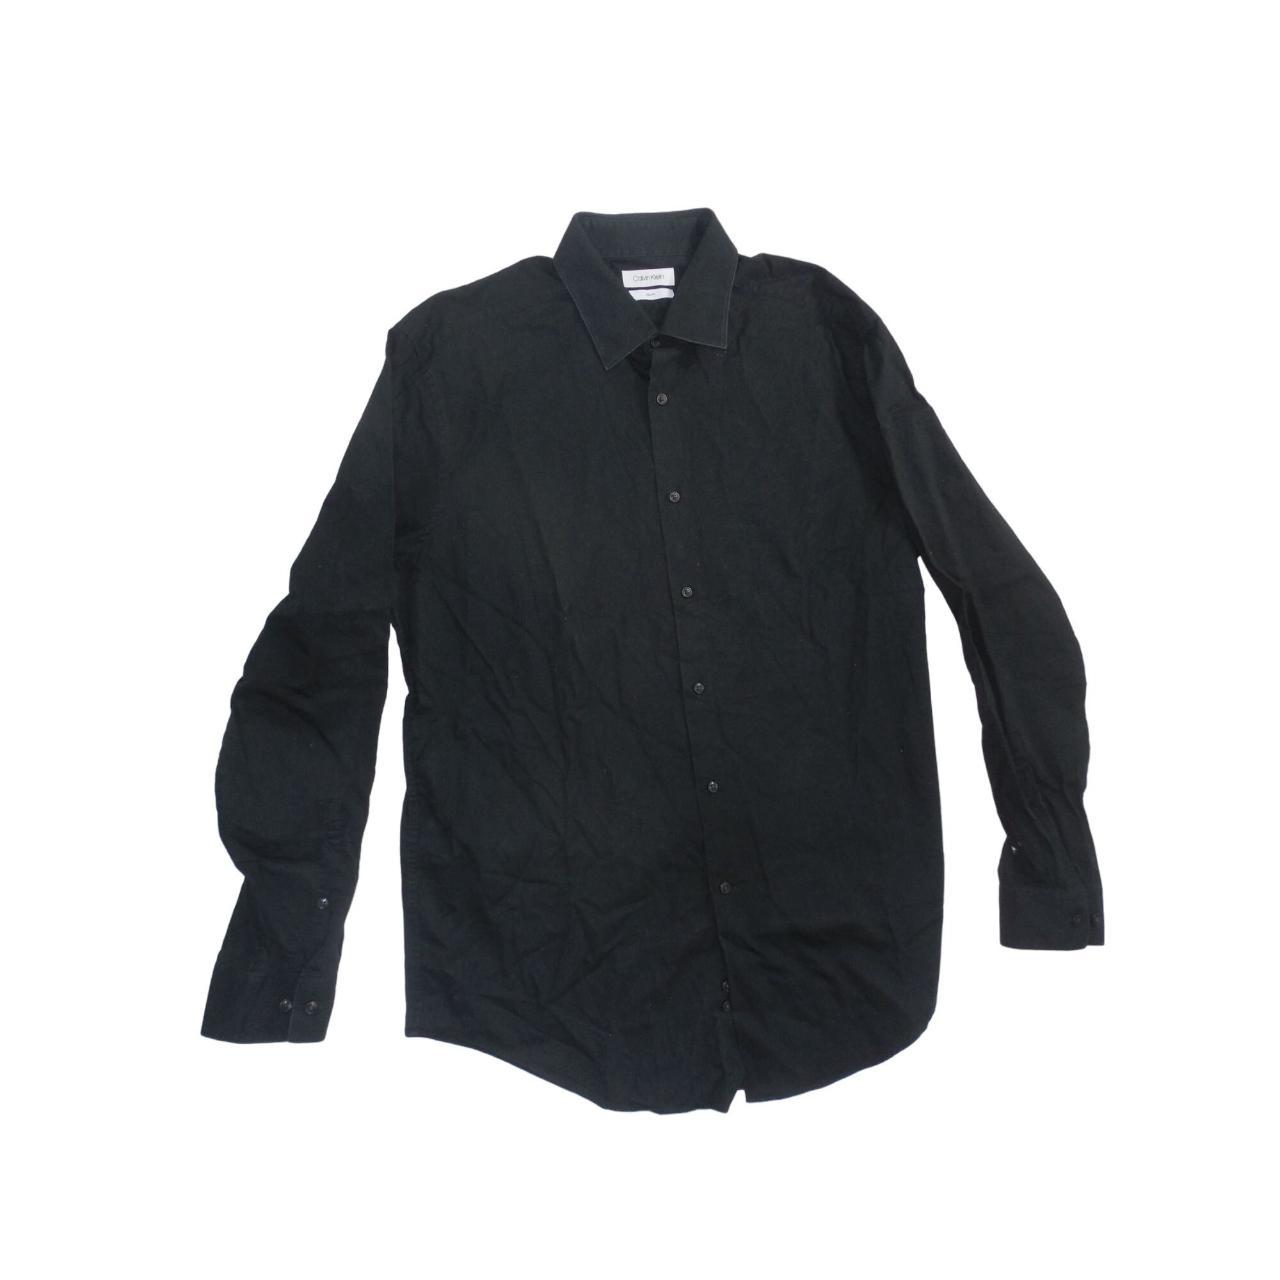 Calvin Klein Shirt Button Up Men Sz XL 17 34/35... - Depop